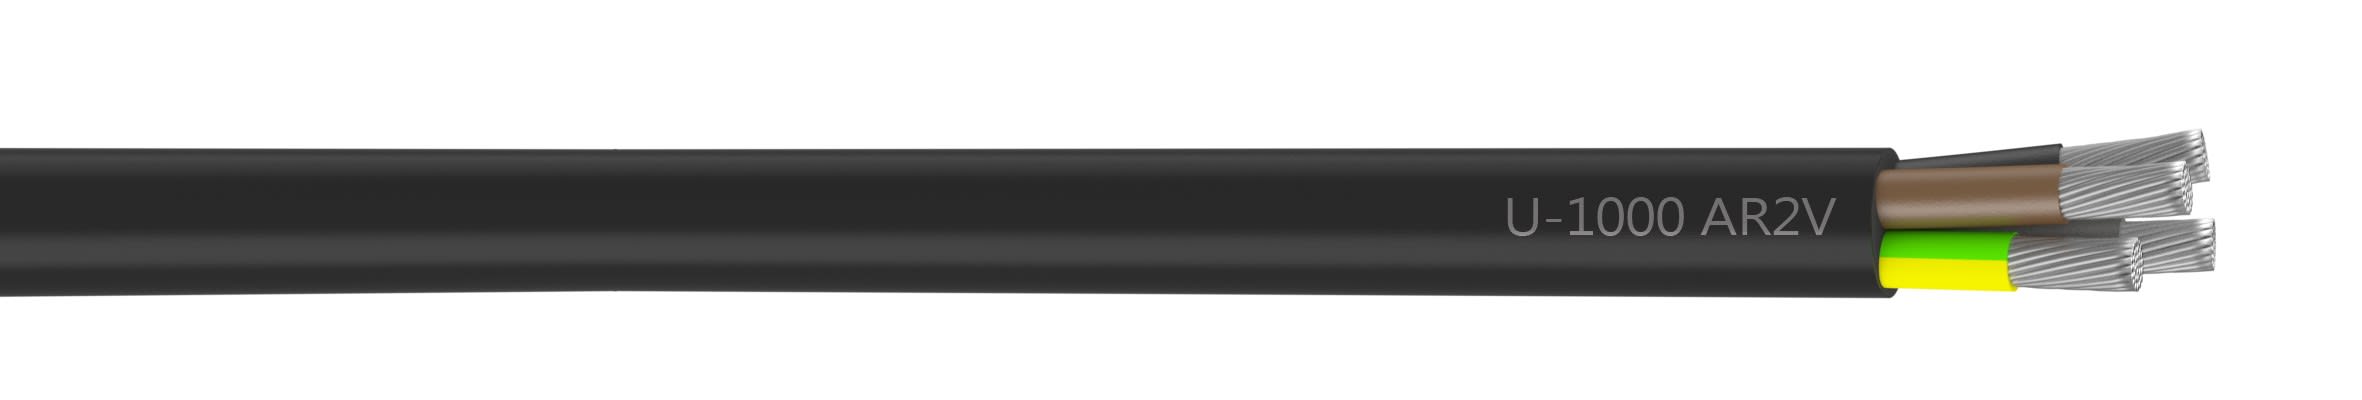 Nexans - Câble rigide U-1000 AR2V aluminium 4G25 longueur à la coupe